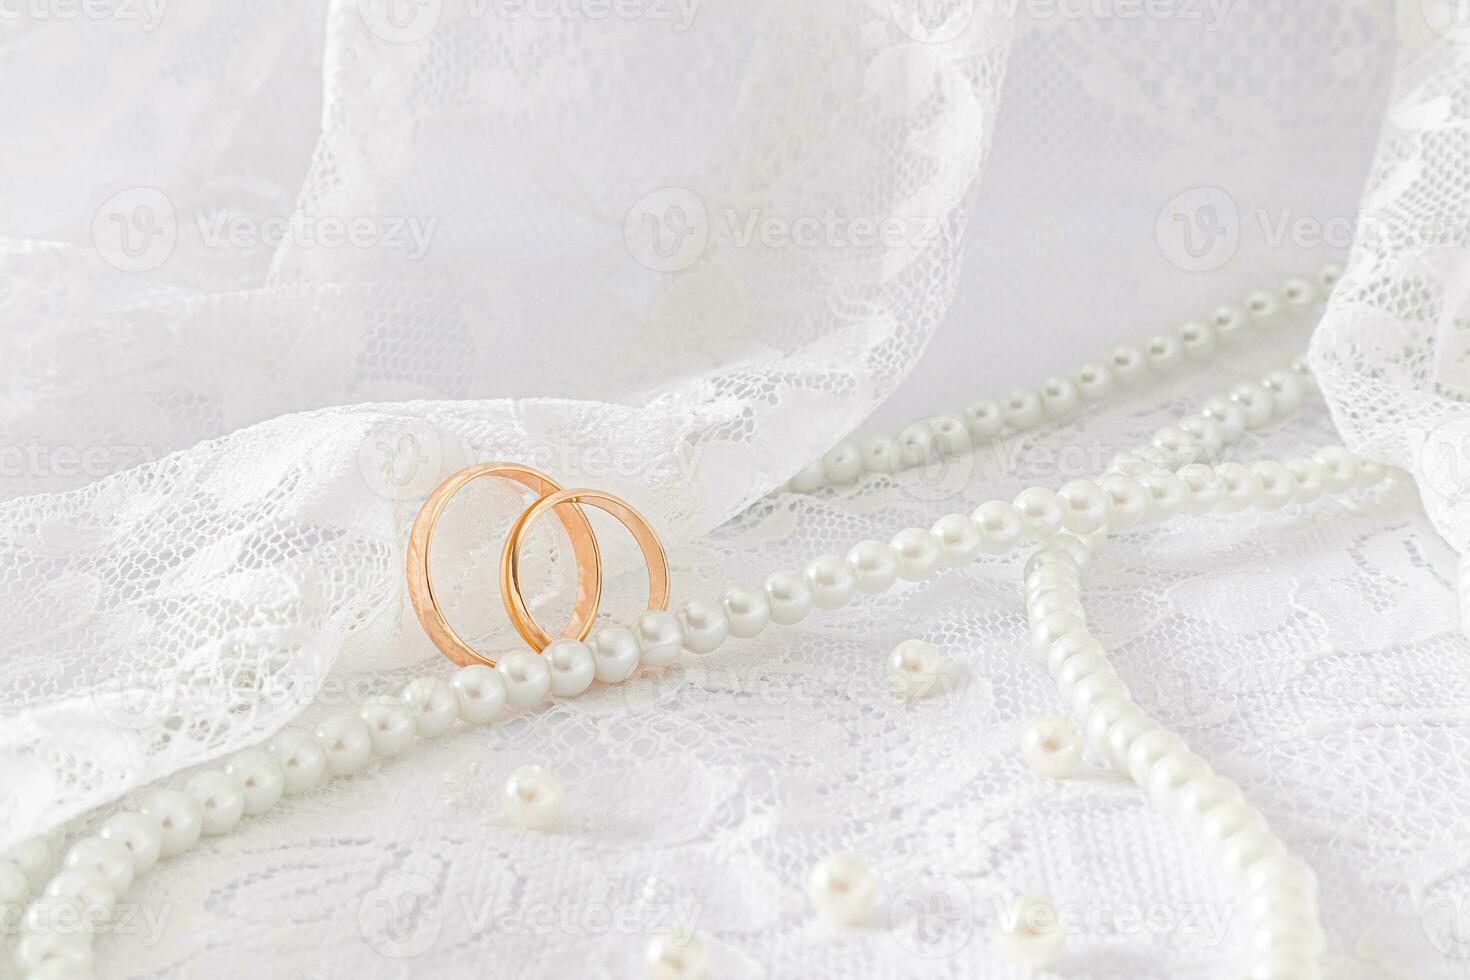 twee goud bruiloft ringen tegen de zacht vouwen van de kant kleding stof van de bruid jurk. een lang draad van parel kralen. lay-out voor ontwerp. foto